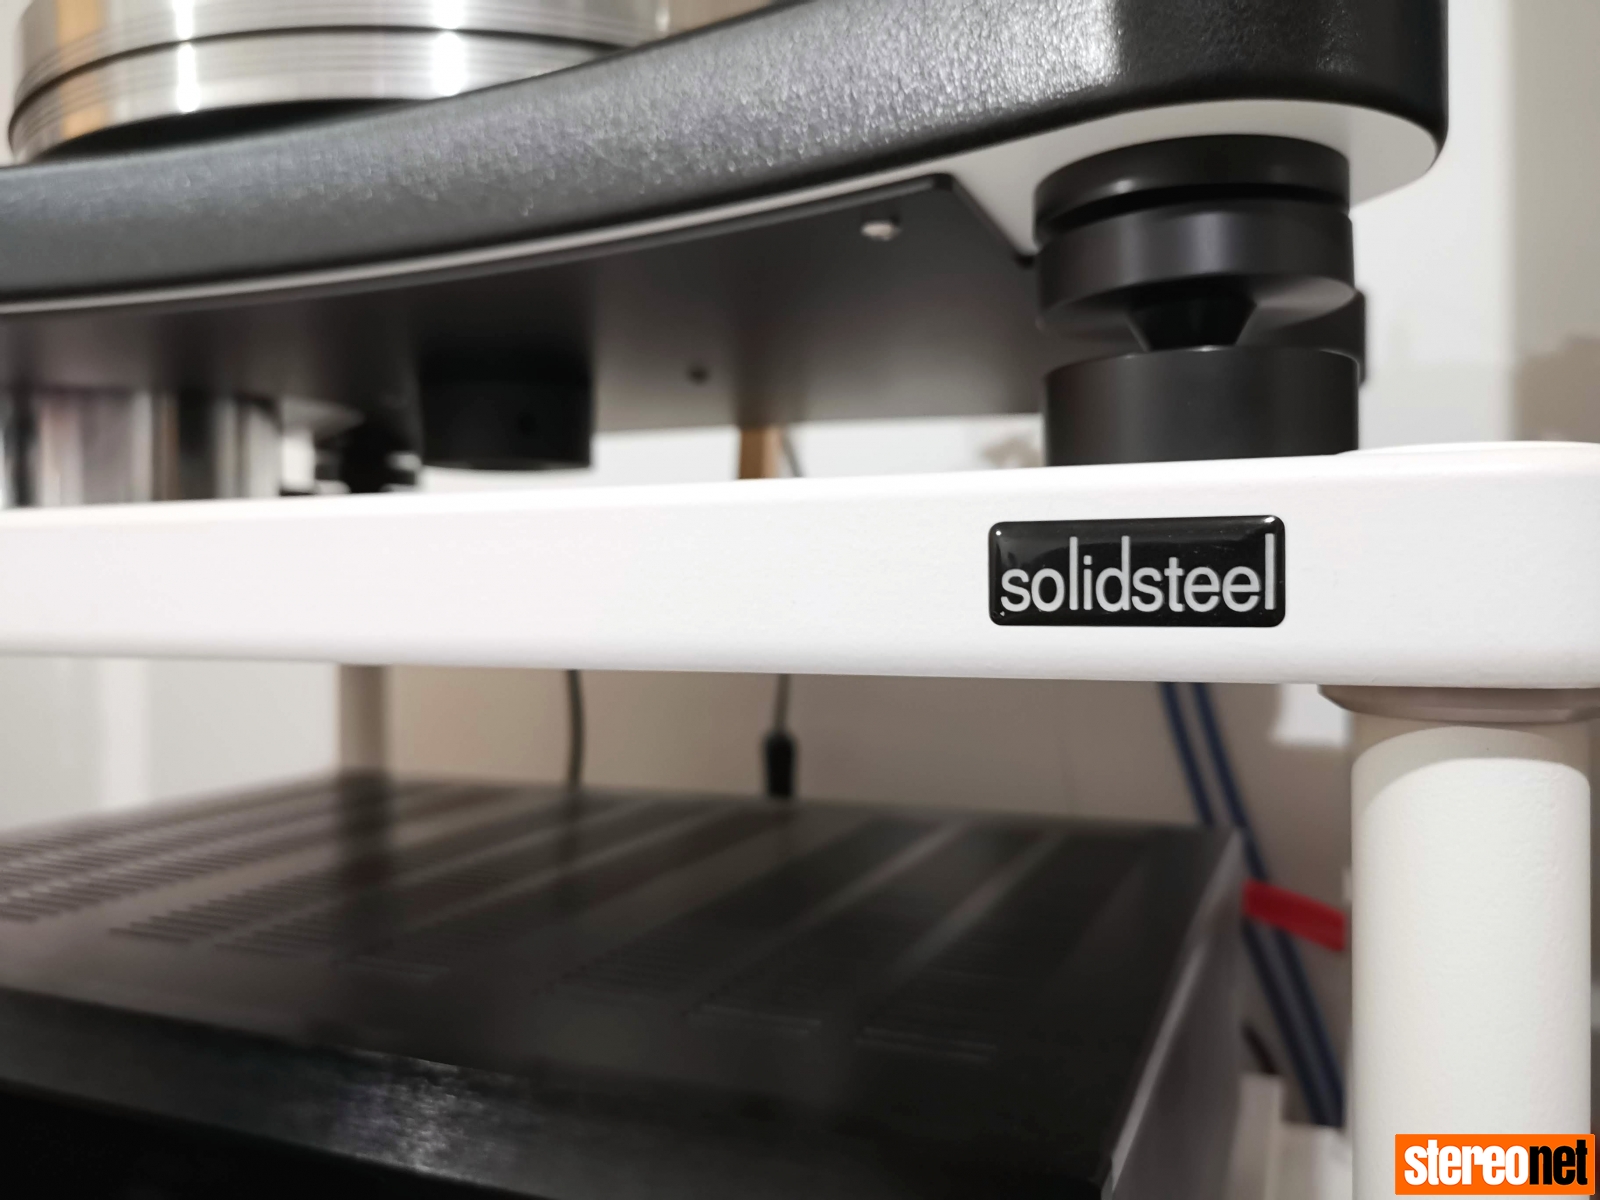 SolidSteel S5-3 review